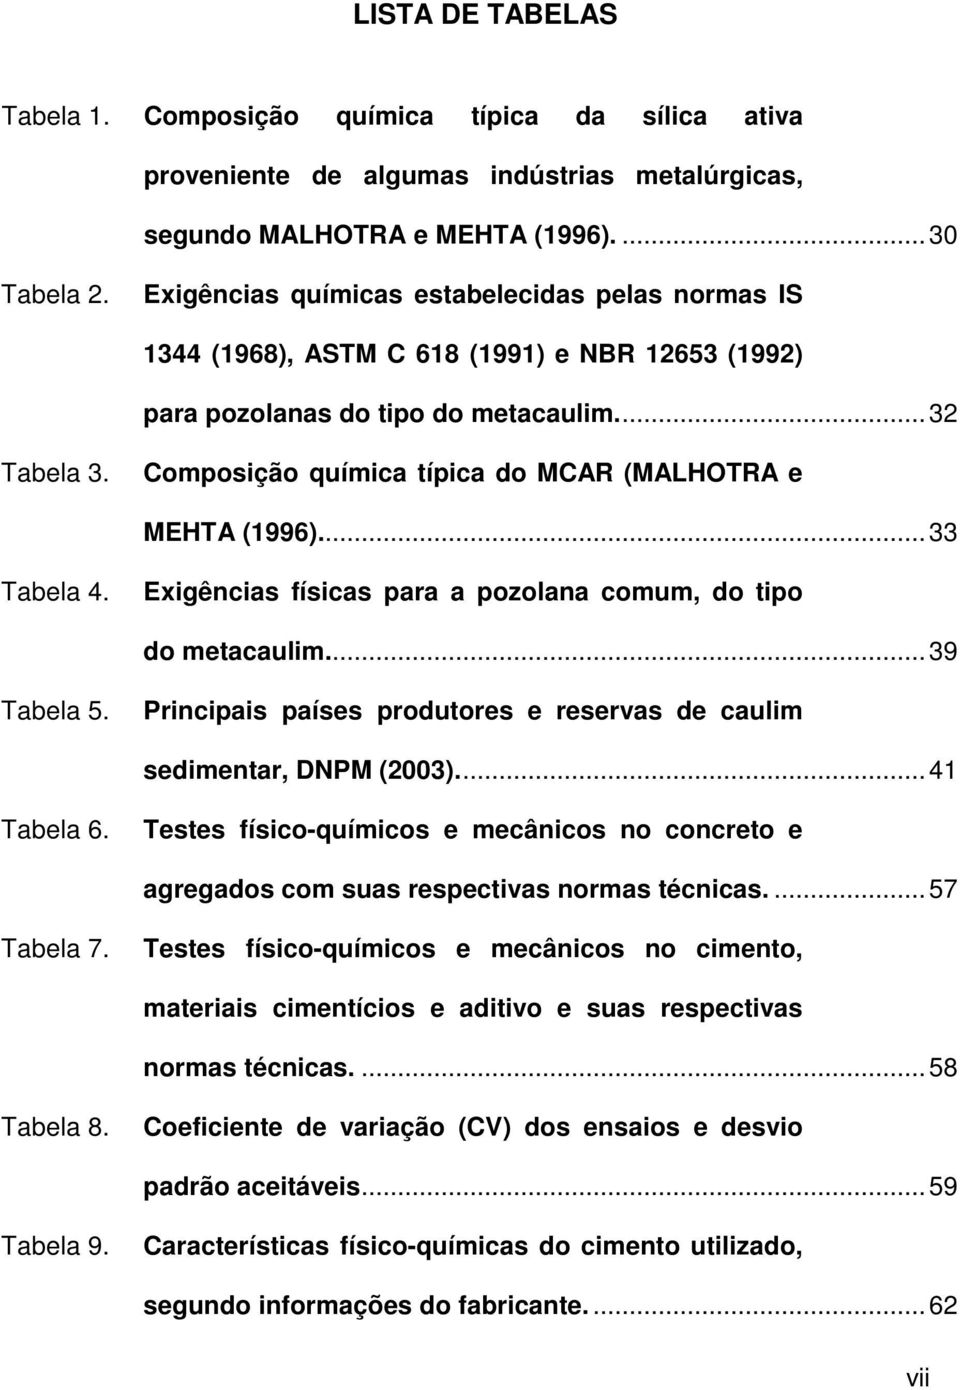 Composição química típica do MCAR (MALHOTRA e MEHTA (1996)...33 Tabela 4. Exigências físicas para a pozolana comum, do tipo do metacaulim...39 Tabela 5.